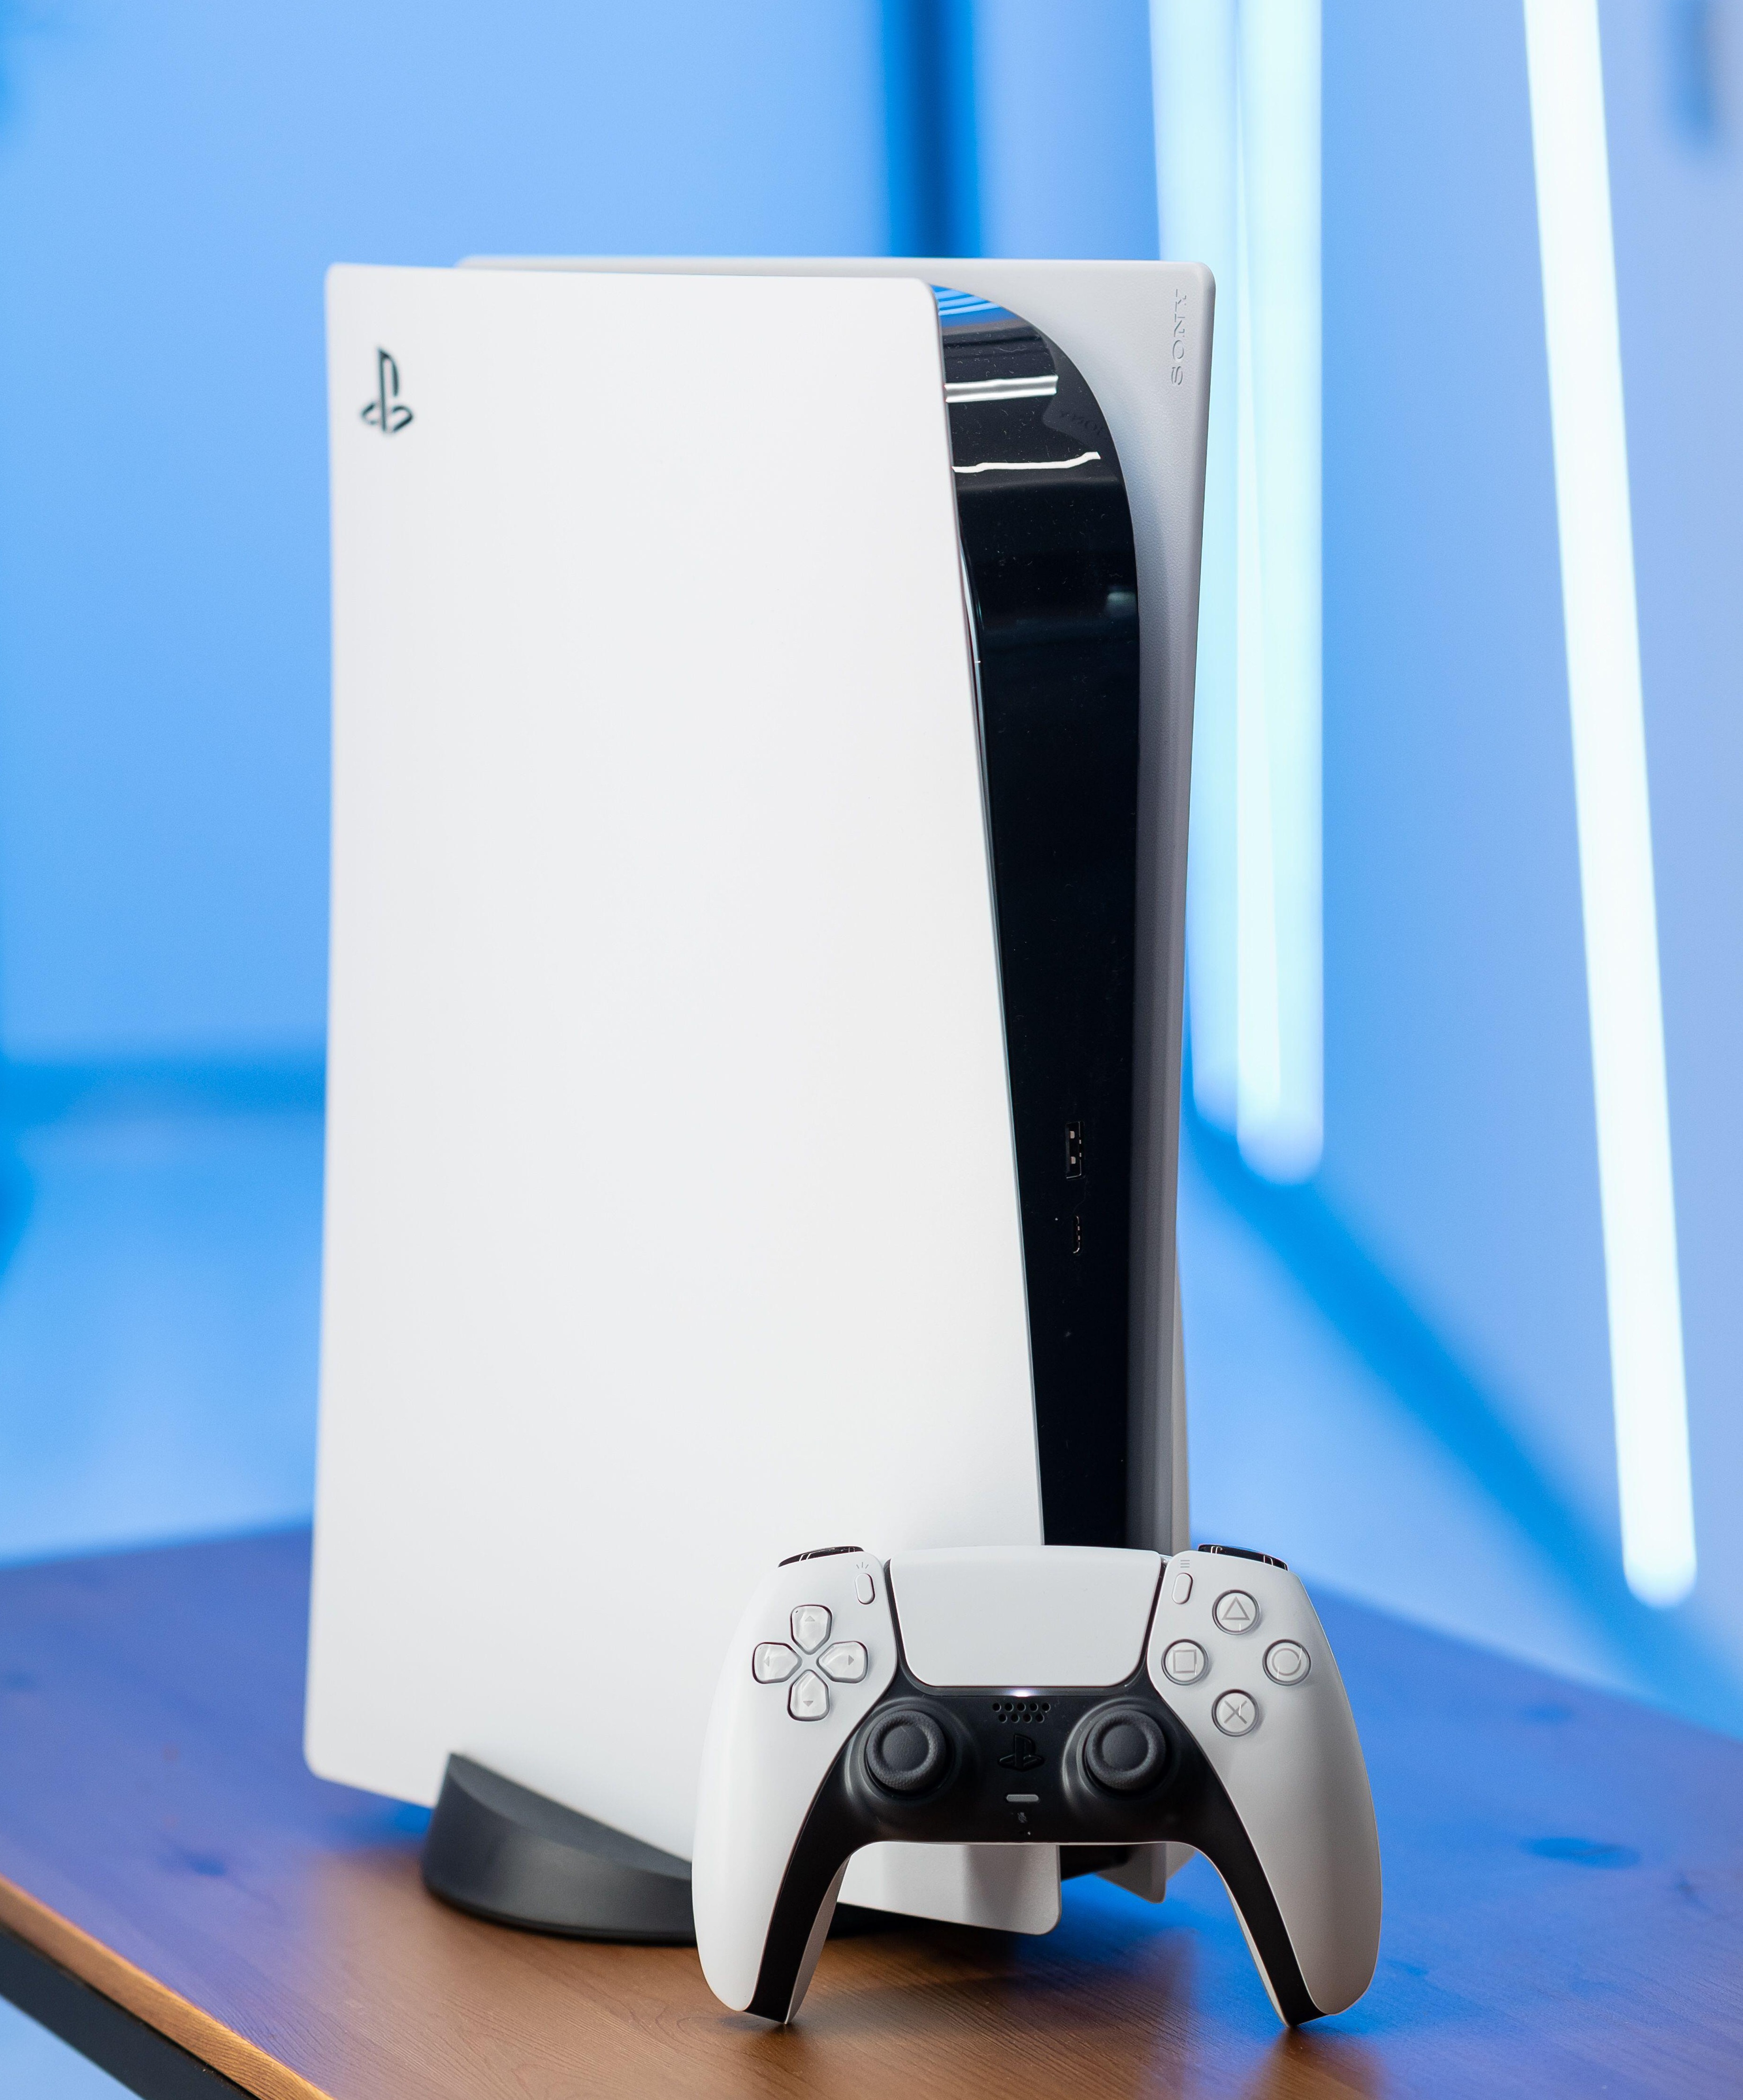 Benutzer, die Level 5 erreichen, nehmen an der Verlosung einer PlayStation 5 teil